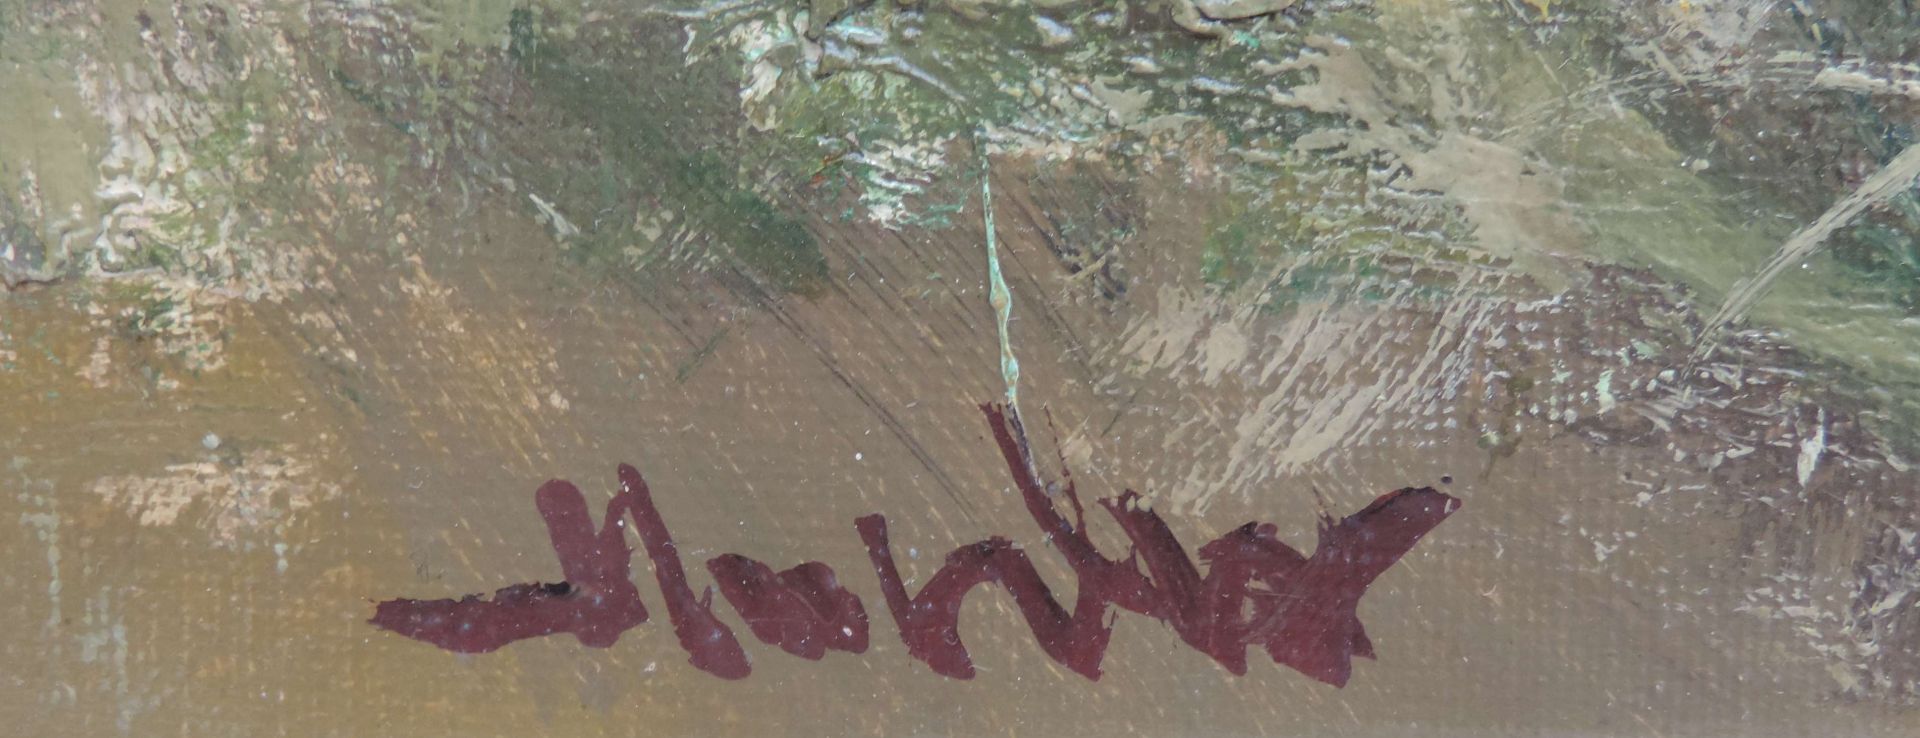 ANONYMUS/MA, 2.H.20.Jh., Öl/Lw, Wildschweinkeiler in Uferböschung, li u unleserl sign, 49 x 59, GR - Bild 2 aus 2